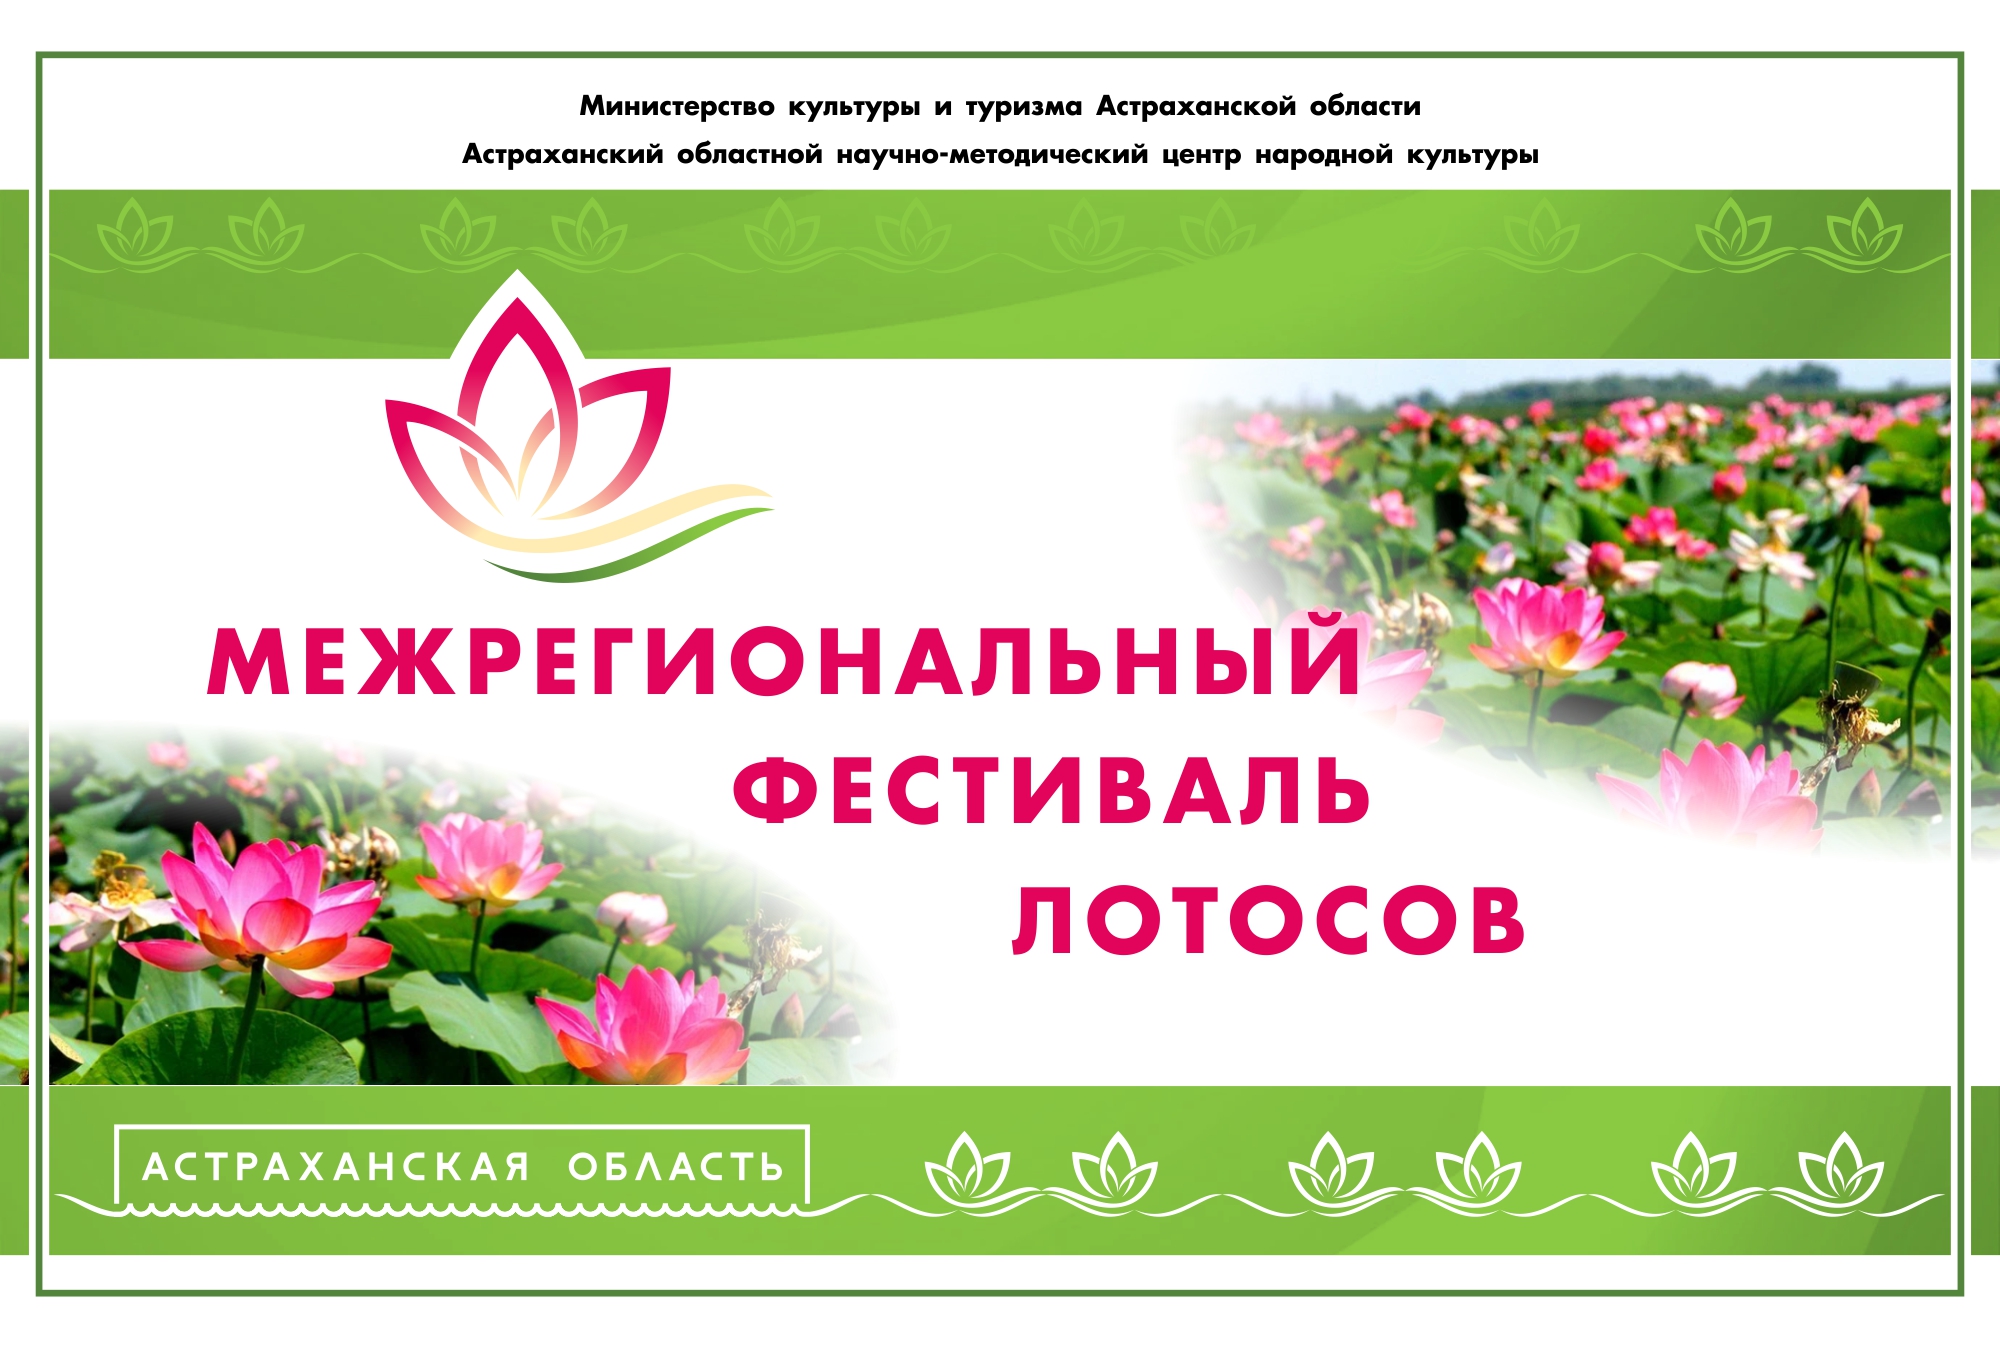 В Астрахани состоится закрытие межрегионального фестиваля Лотосов